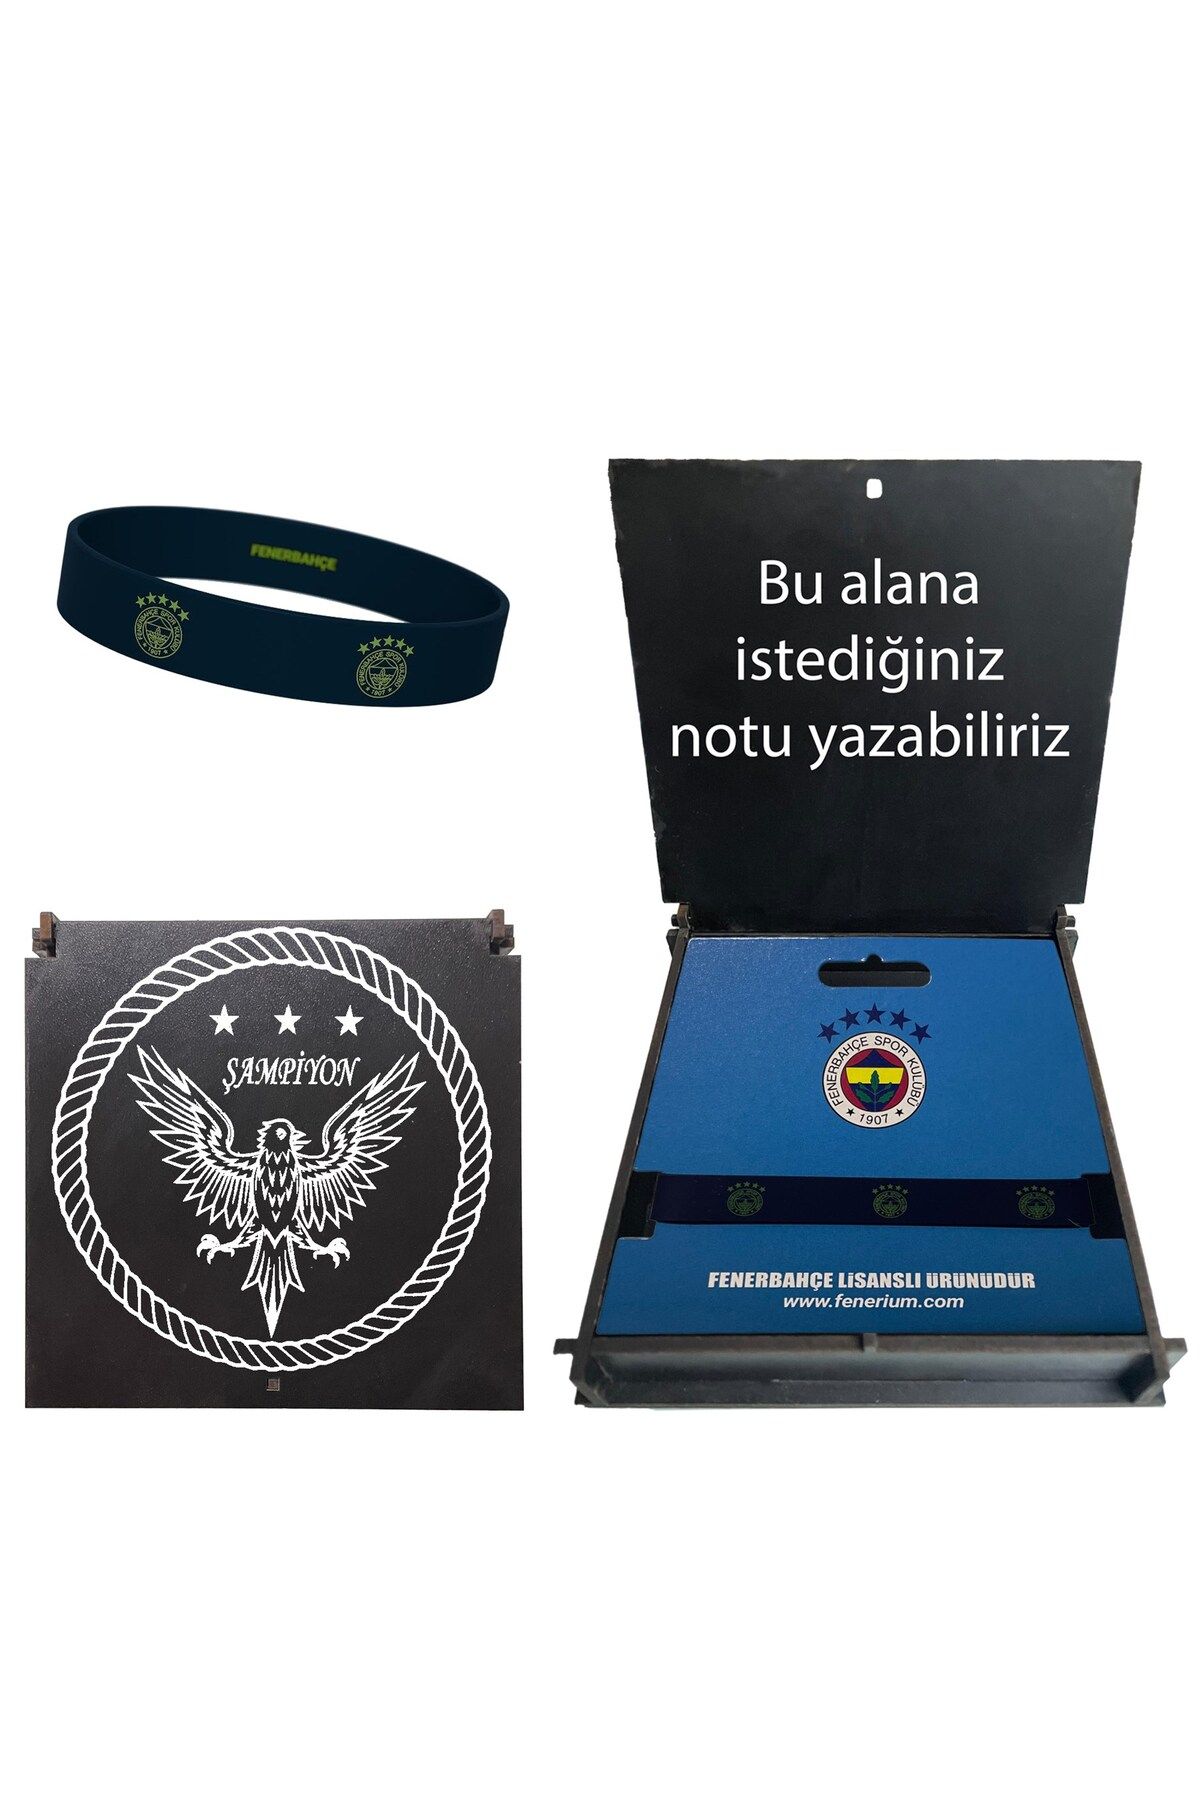 Fenerbahçe Lisanslı Logolu Hediye Ahşap Kutulu Bileklik